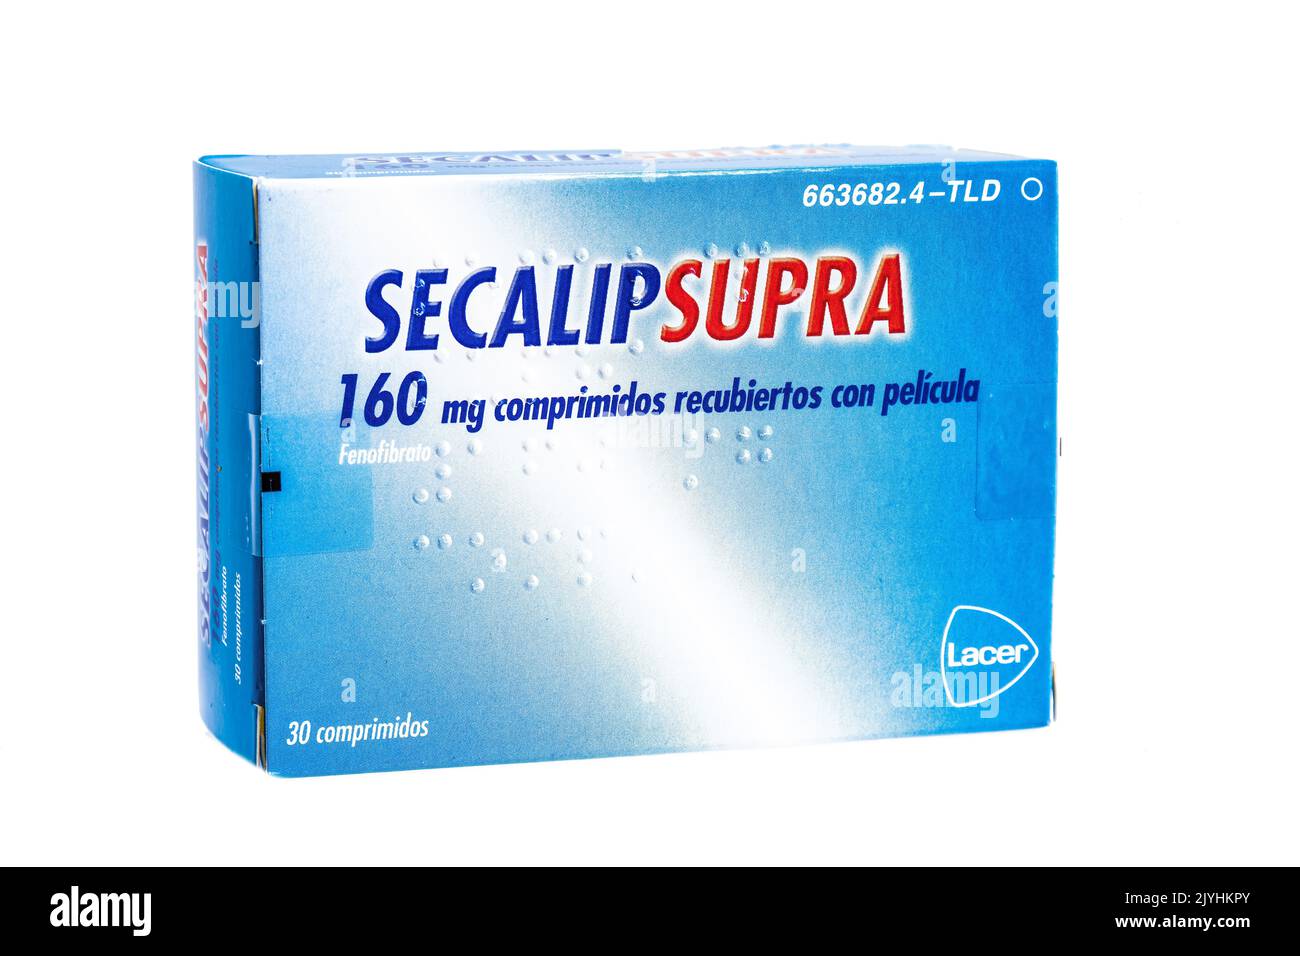 Huelva, Spagna - 8 settembre 2022: Il marchio del fenofibrato Secalip Supra, è un farmaco della classe del fibrato usato per trattare i livelli anormali di lipidi nel sangue. Foto Stock